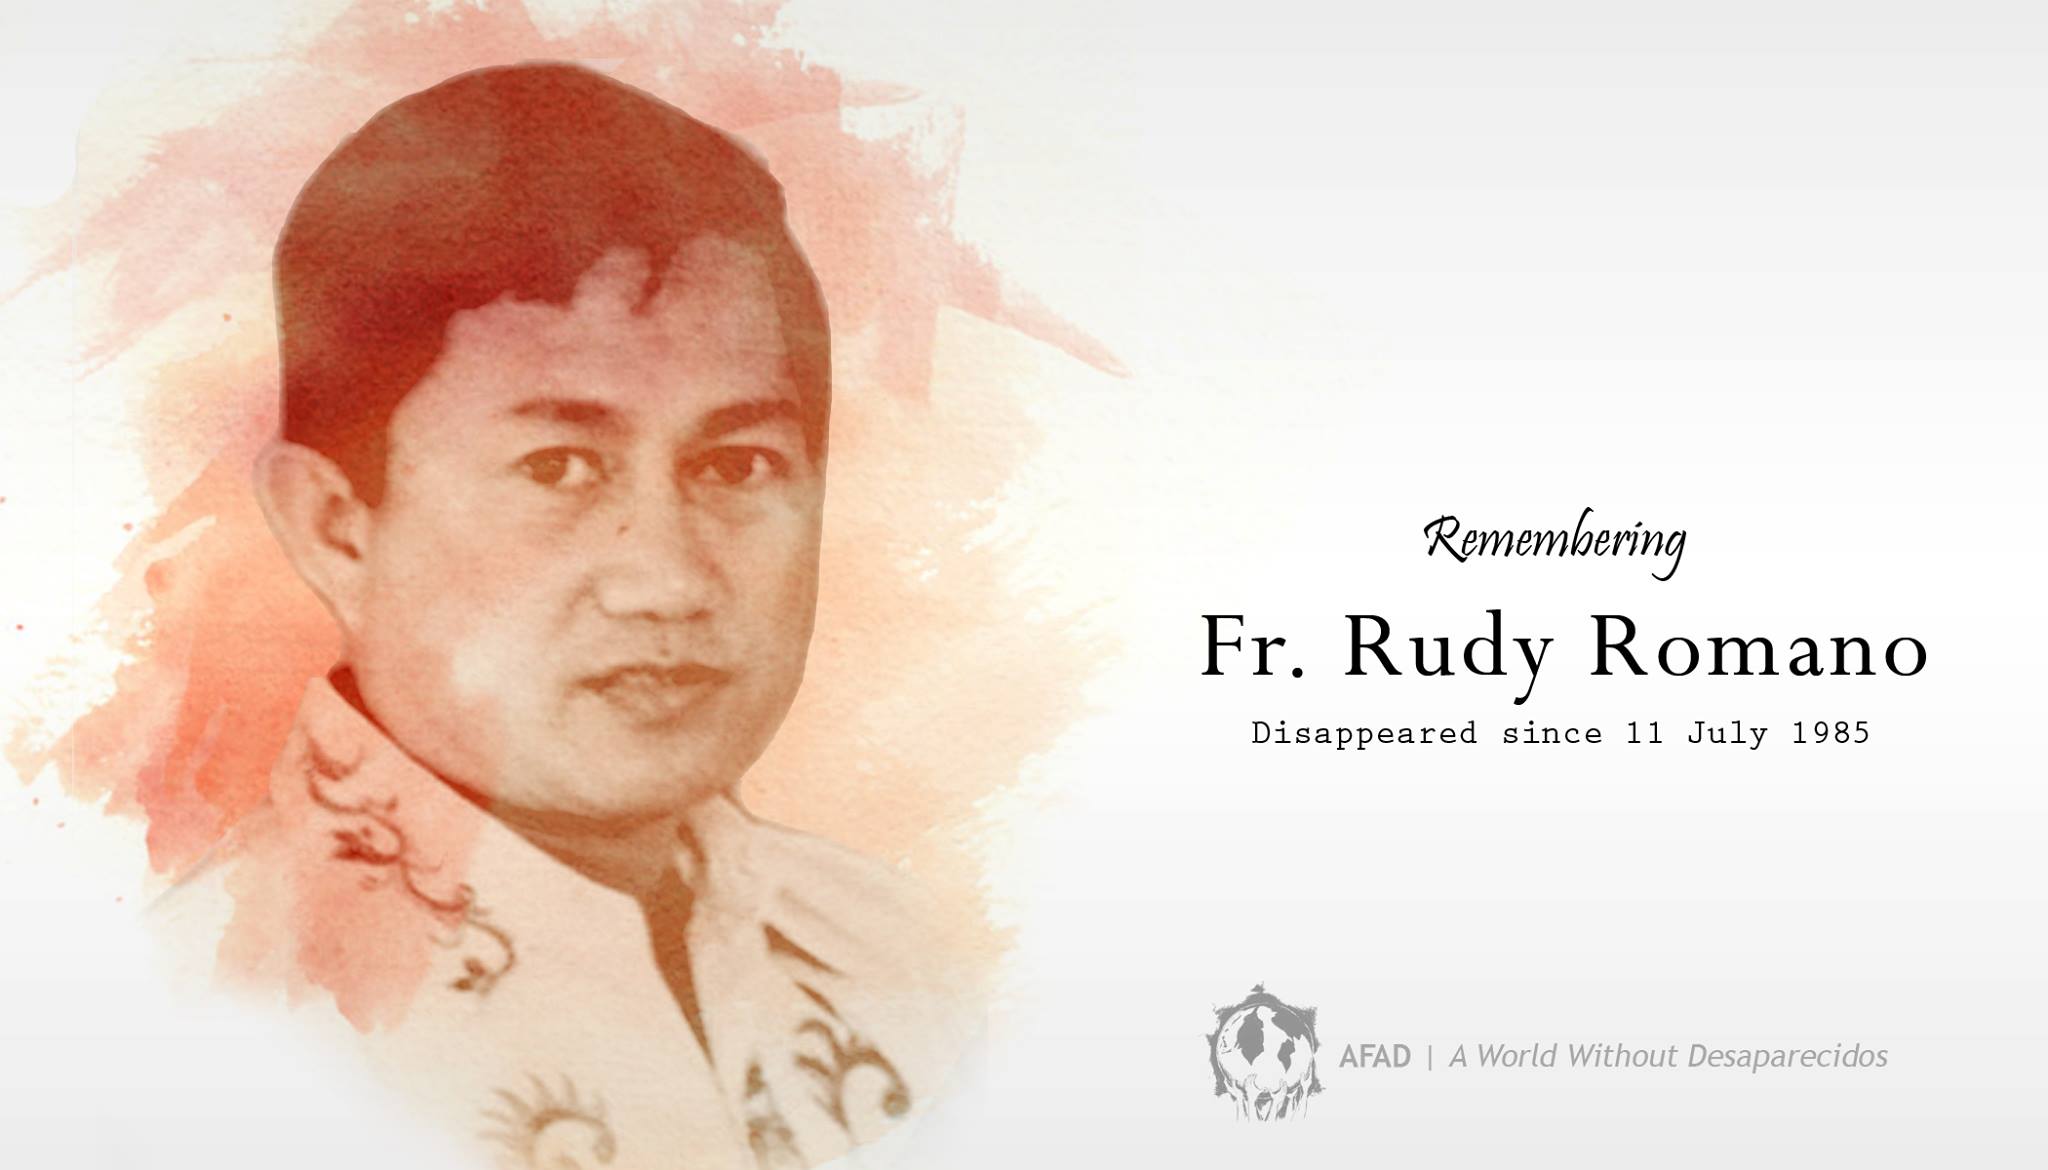 Fr. Rudy